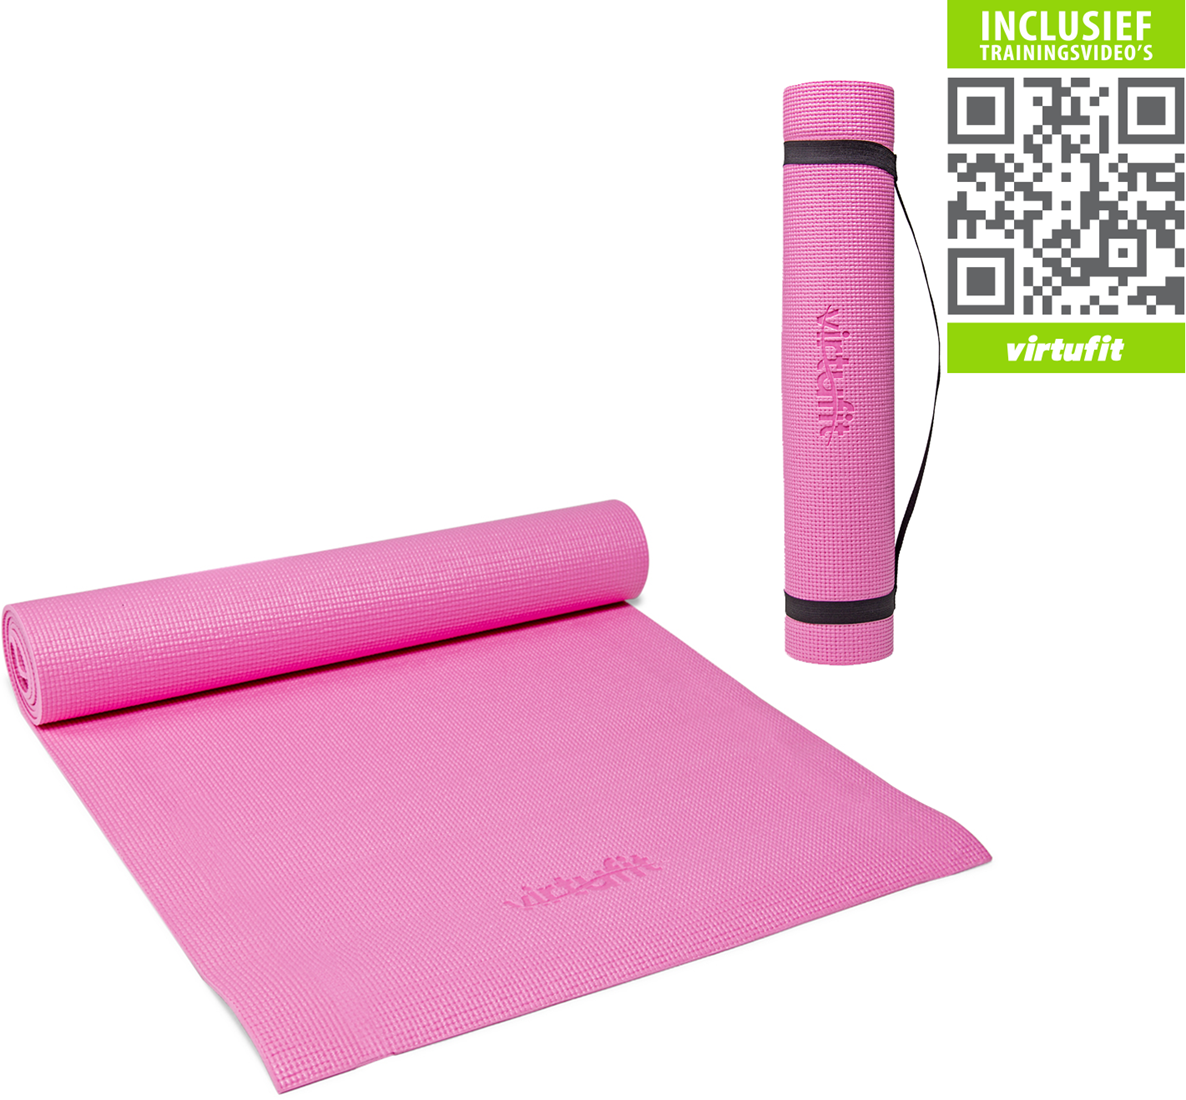 Vlak Bijdragen pakket VirtuFit Yogamat Met Draagkoord - 183 x 61 x 0.3 cm - Roze - Gratis  Trainingsvideo's | Fitwinkel.nl